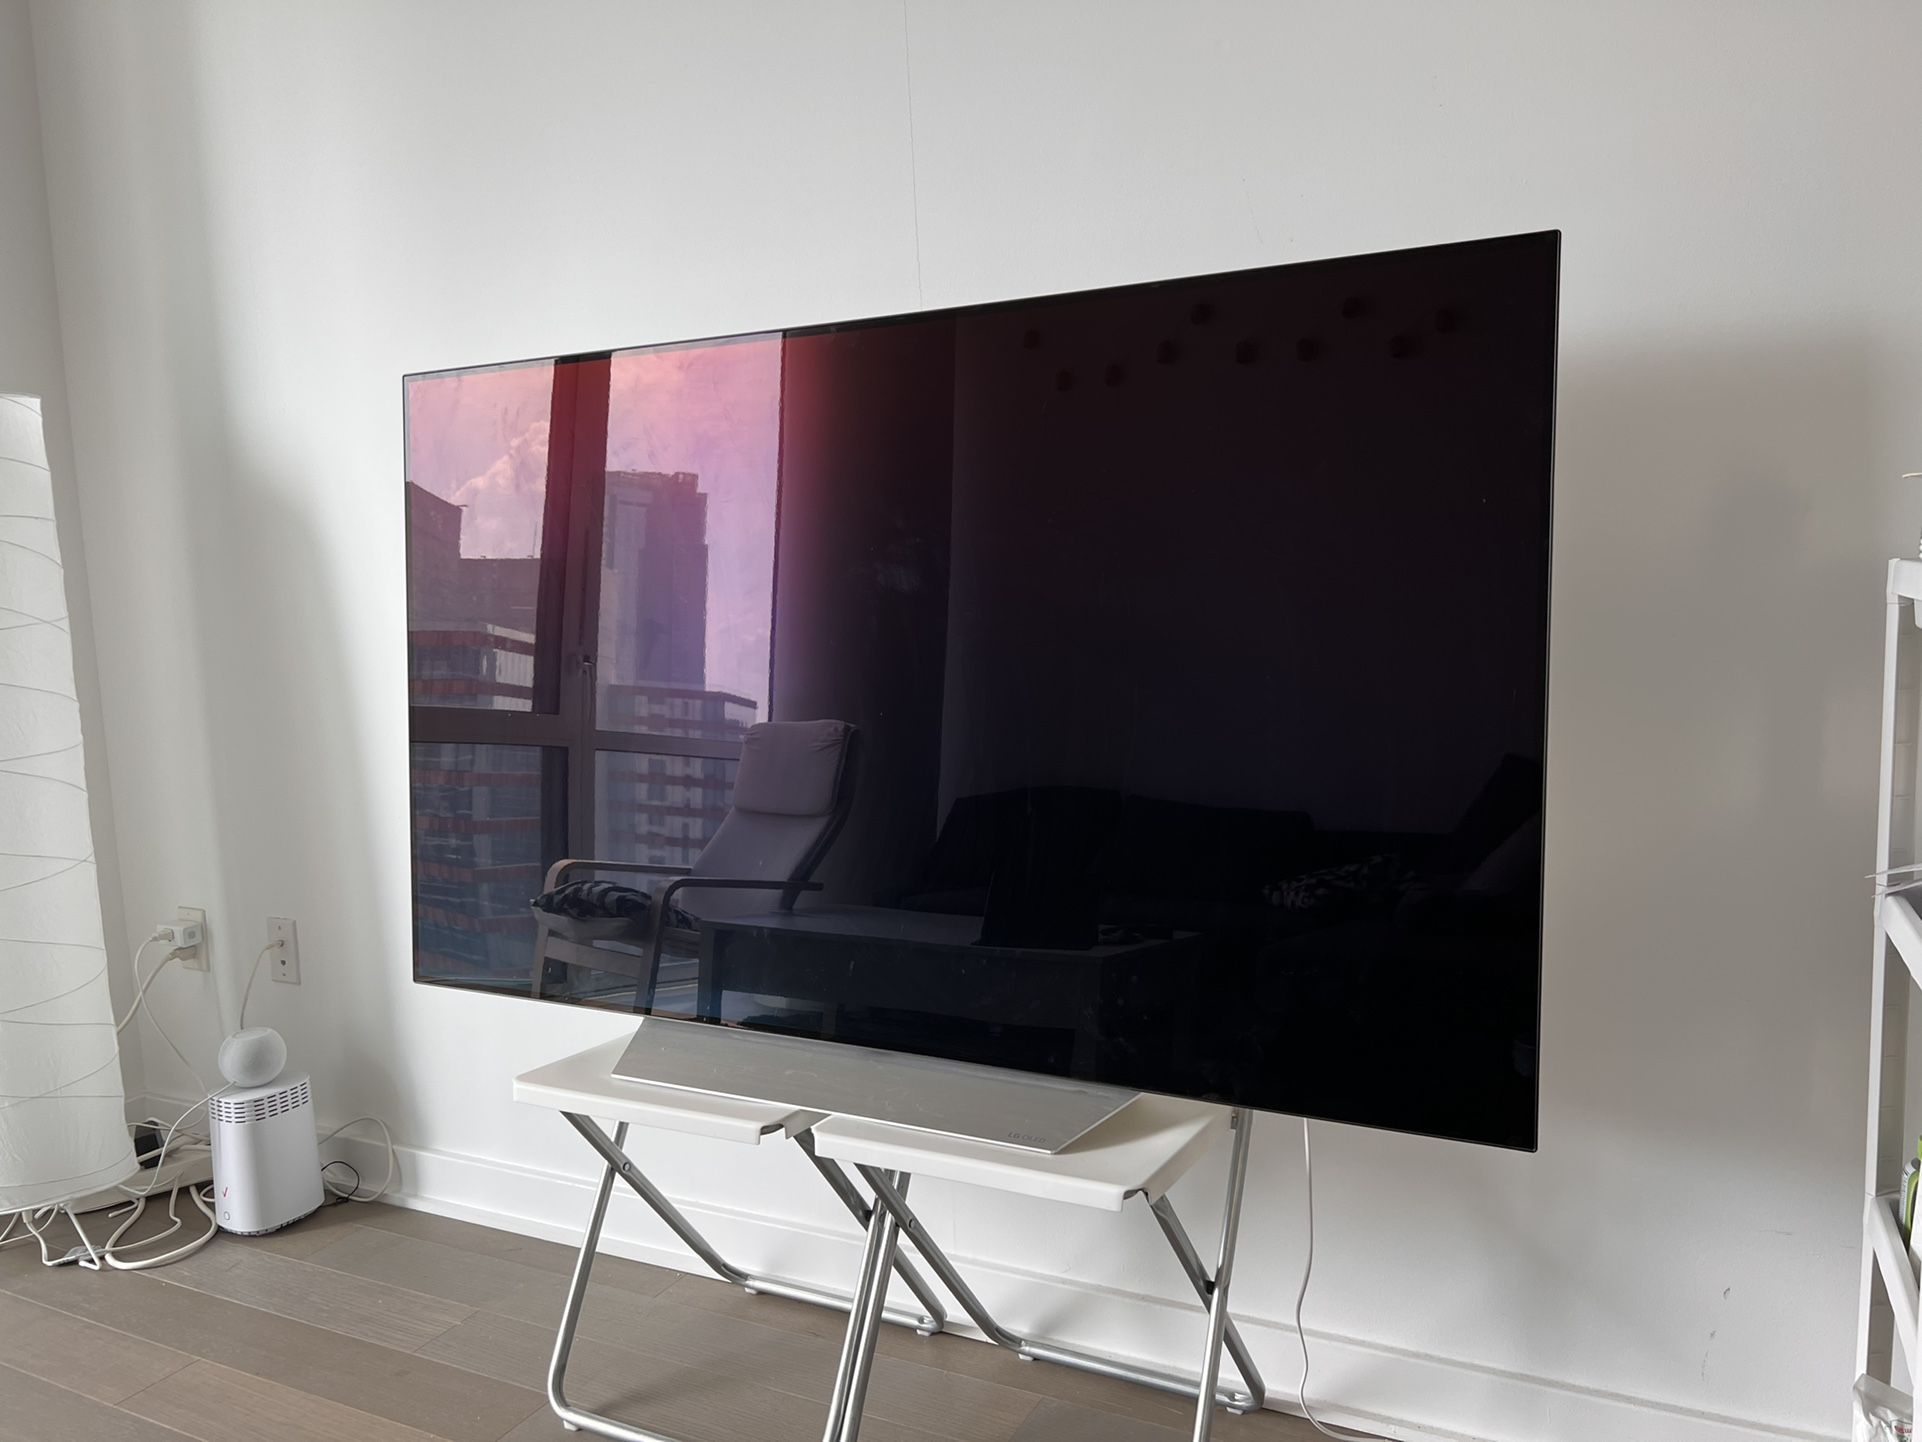 LG C7 OLED 4K HDR Smart TV - 65" Class OLED65C7P